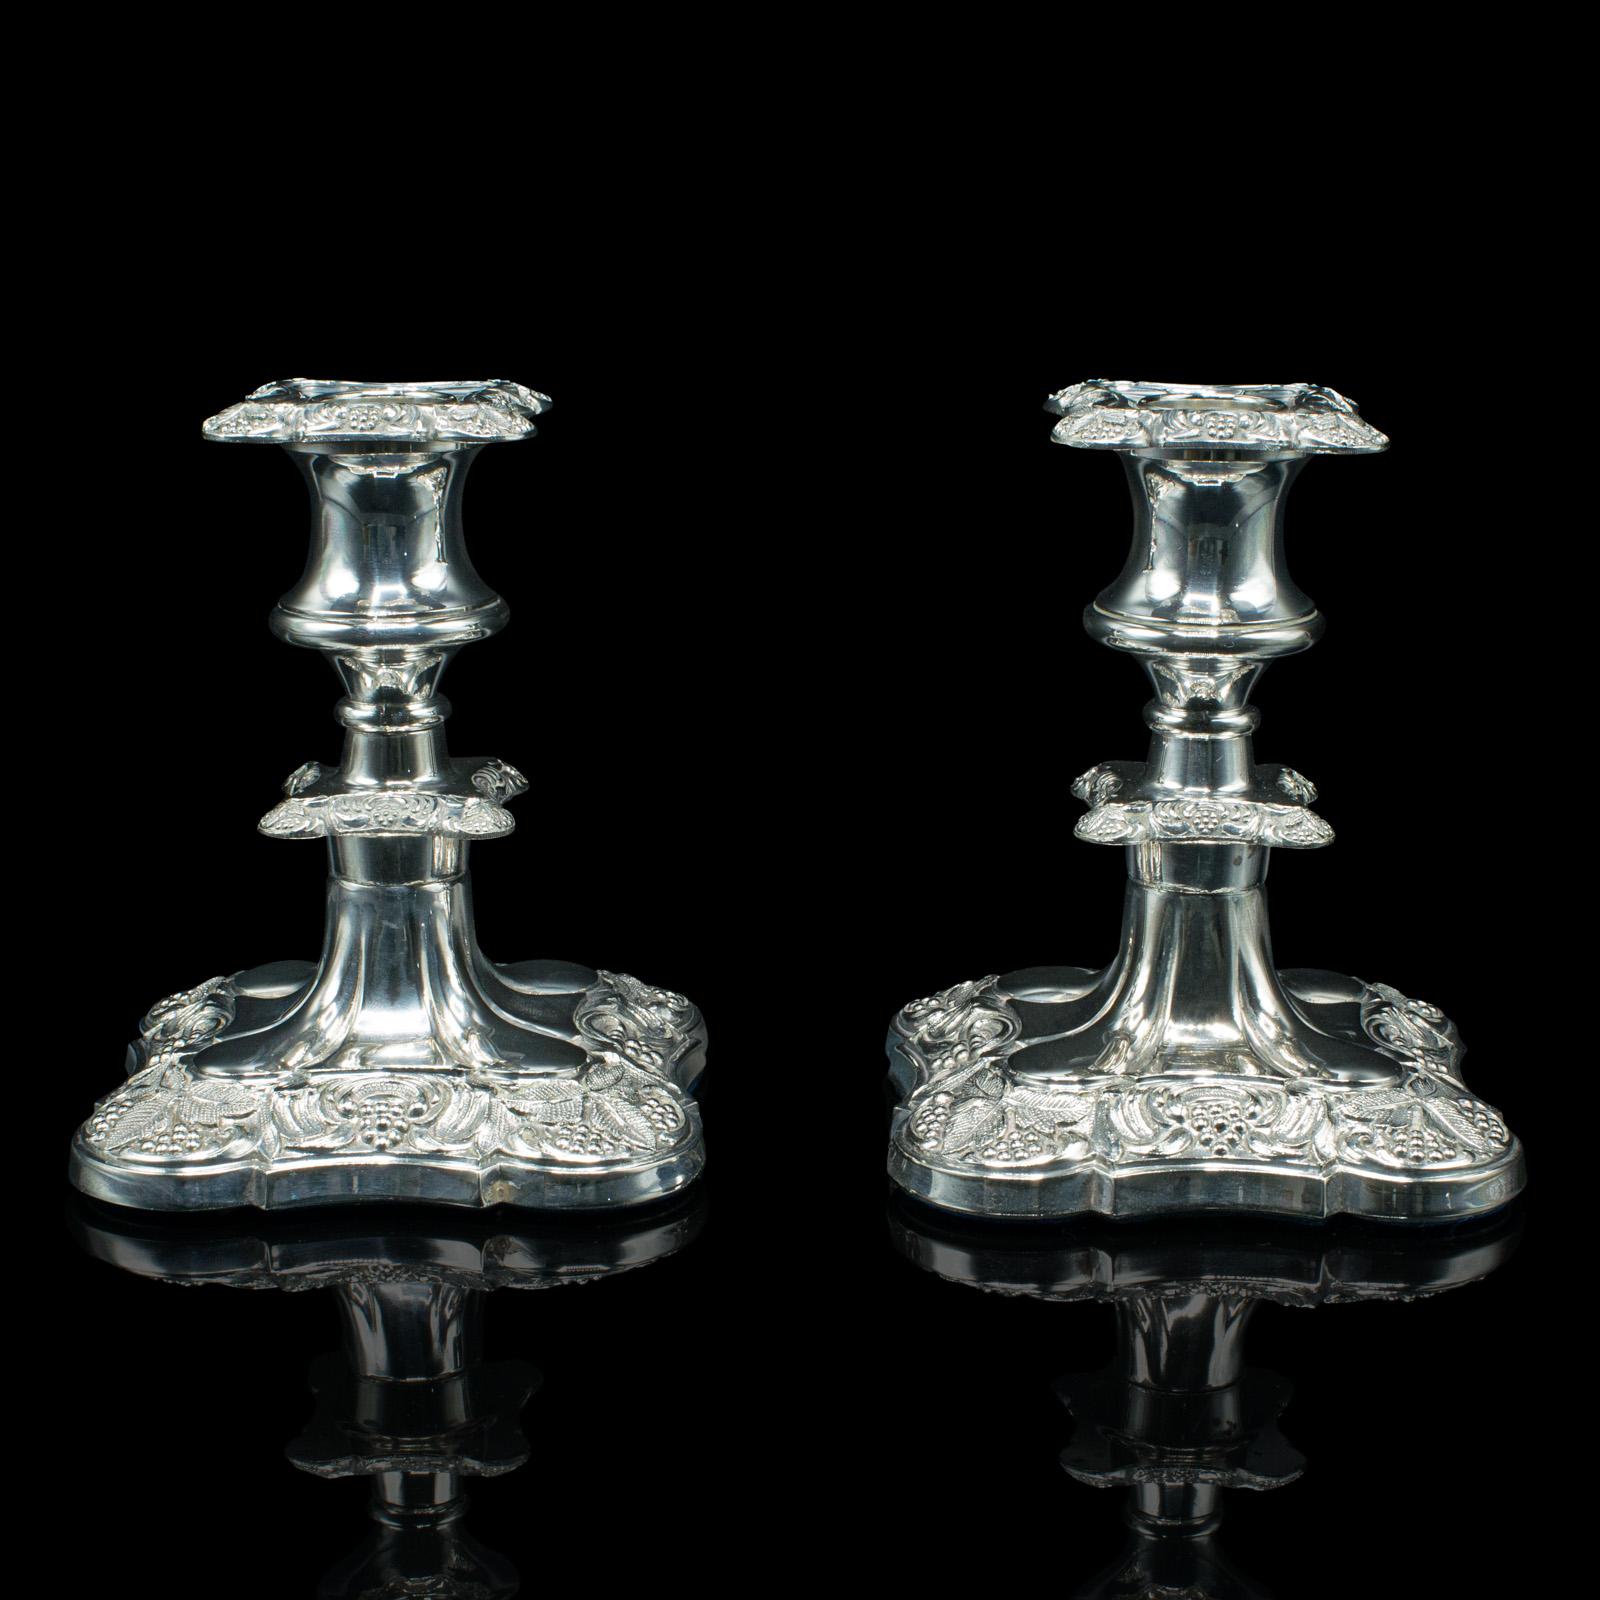 Il s'agit d'une paire de chandeliers anciens. Bougeoir décoratif anglais en métal argenté, datant de la fin de la période victorienne, vers 1900.

Paire attrayante de la fin de l'époque victorienne, avec des détails fins et une fabrication